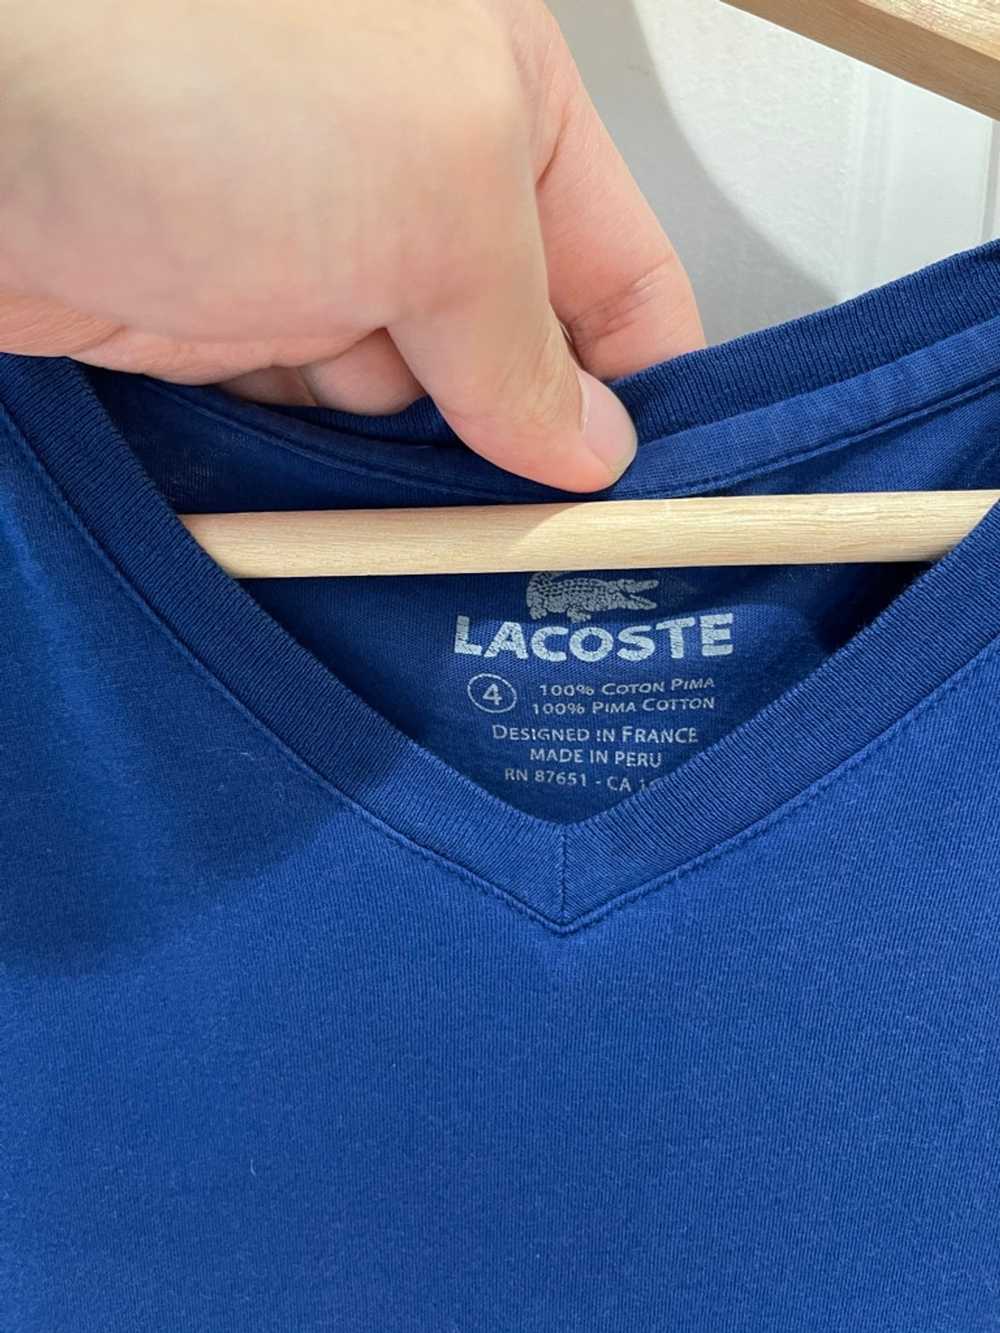 Lacoste Lacoste Pima Cotton Blue T Shirt - image 3